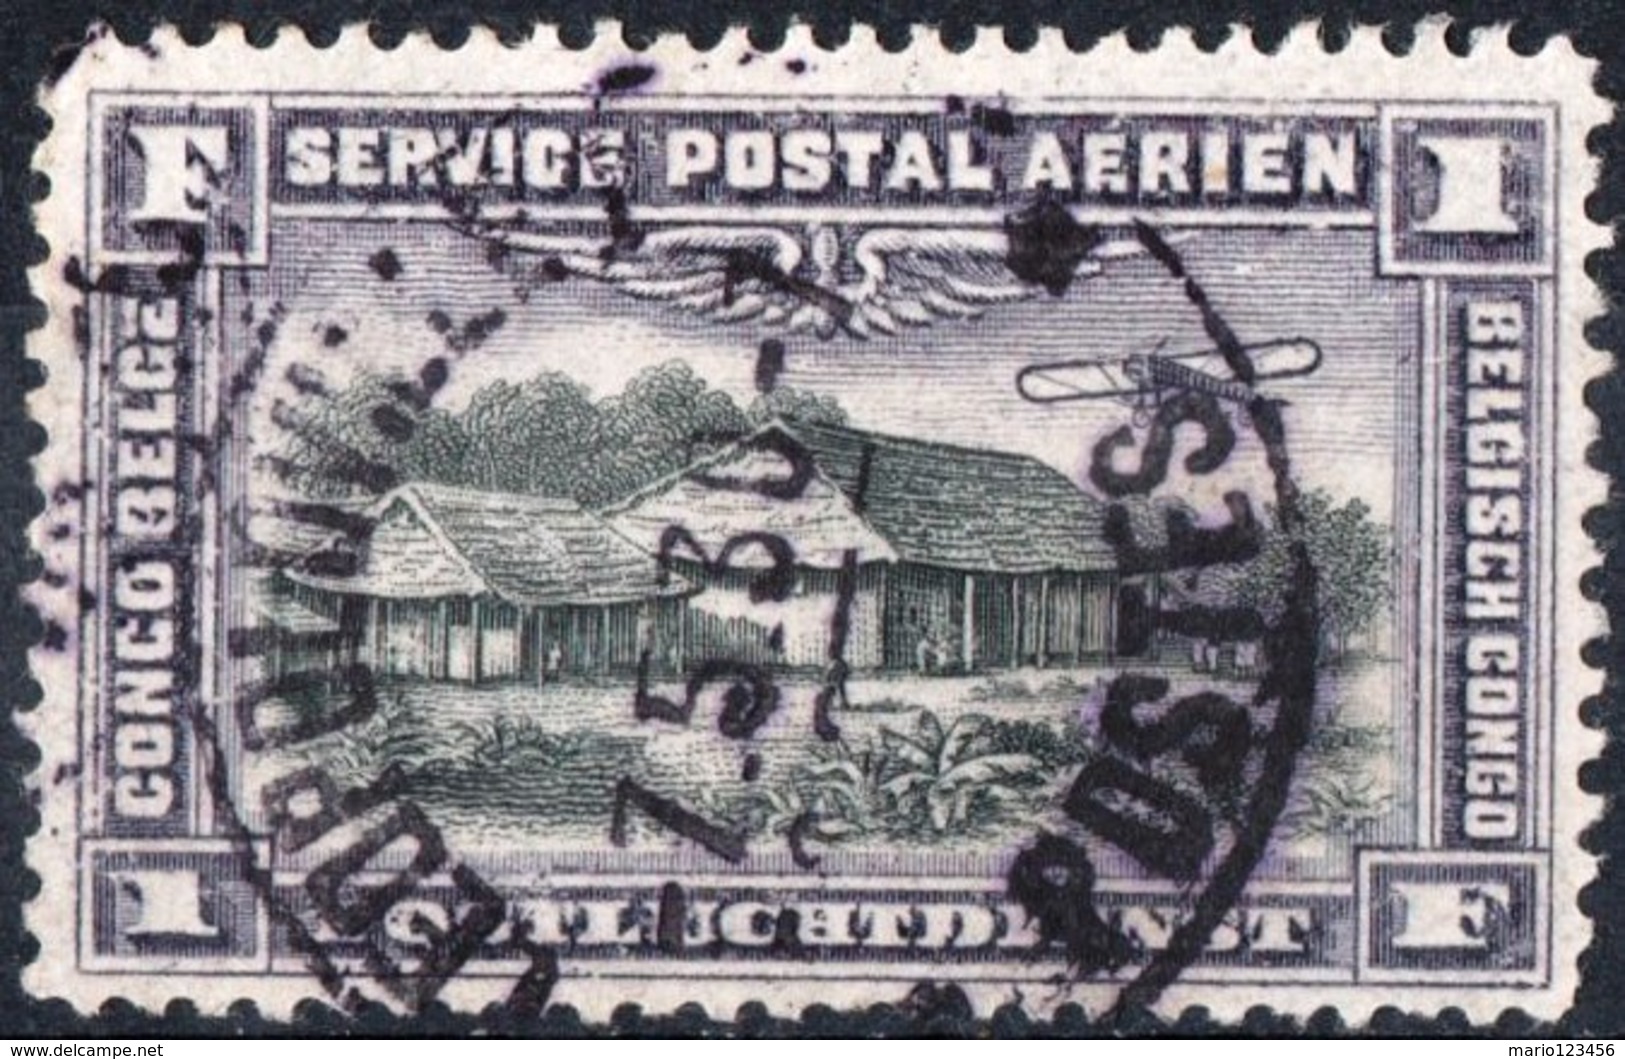 CONGO BELGA, BELGIAN CONGO, COLONIA BELGA, POSTA AEREA, AIRMAIL, 1934,  USATO Michel 43   Scott C2 - Gebraucht